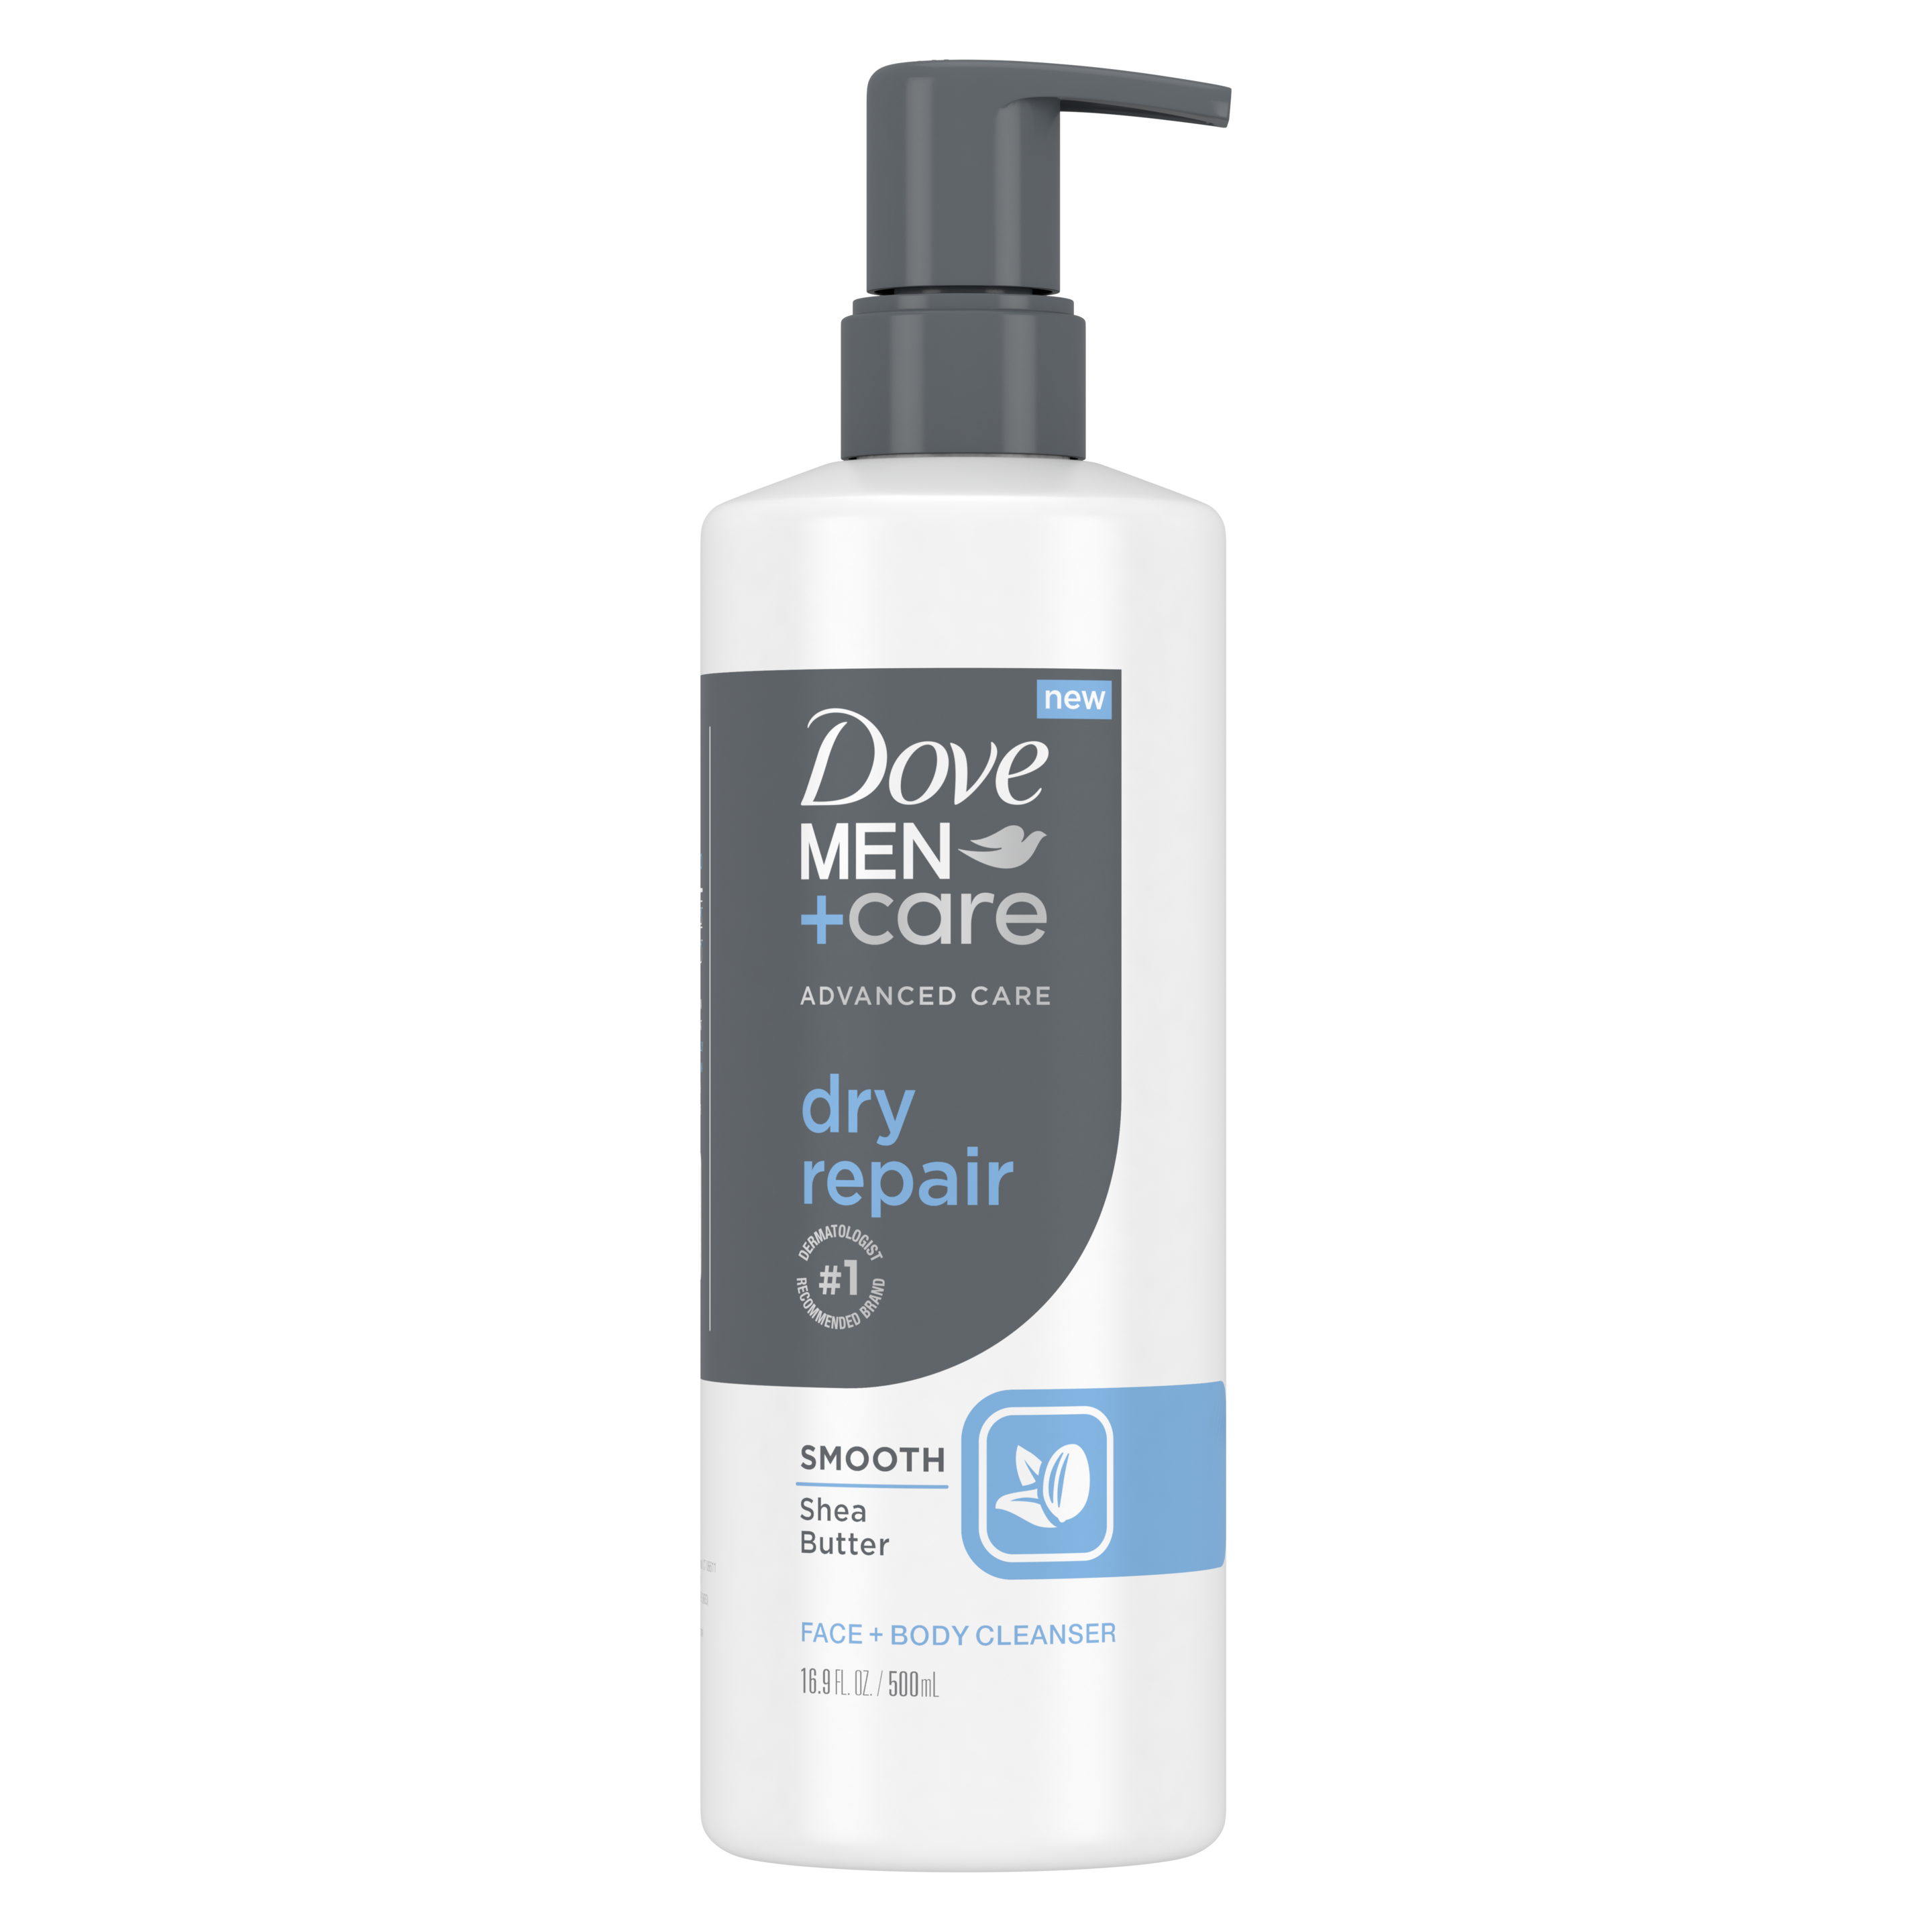 Dove Men+Care Advanced Care Dry Repair Face + Body Wash